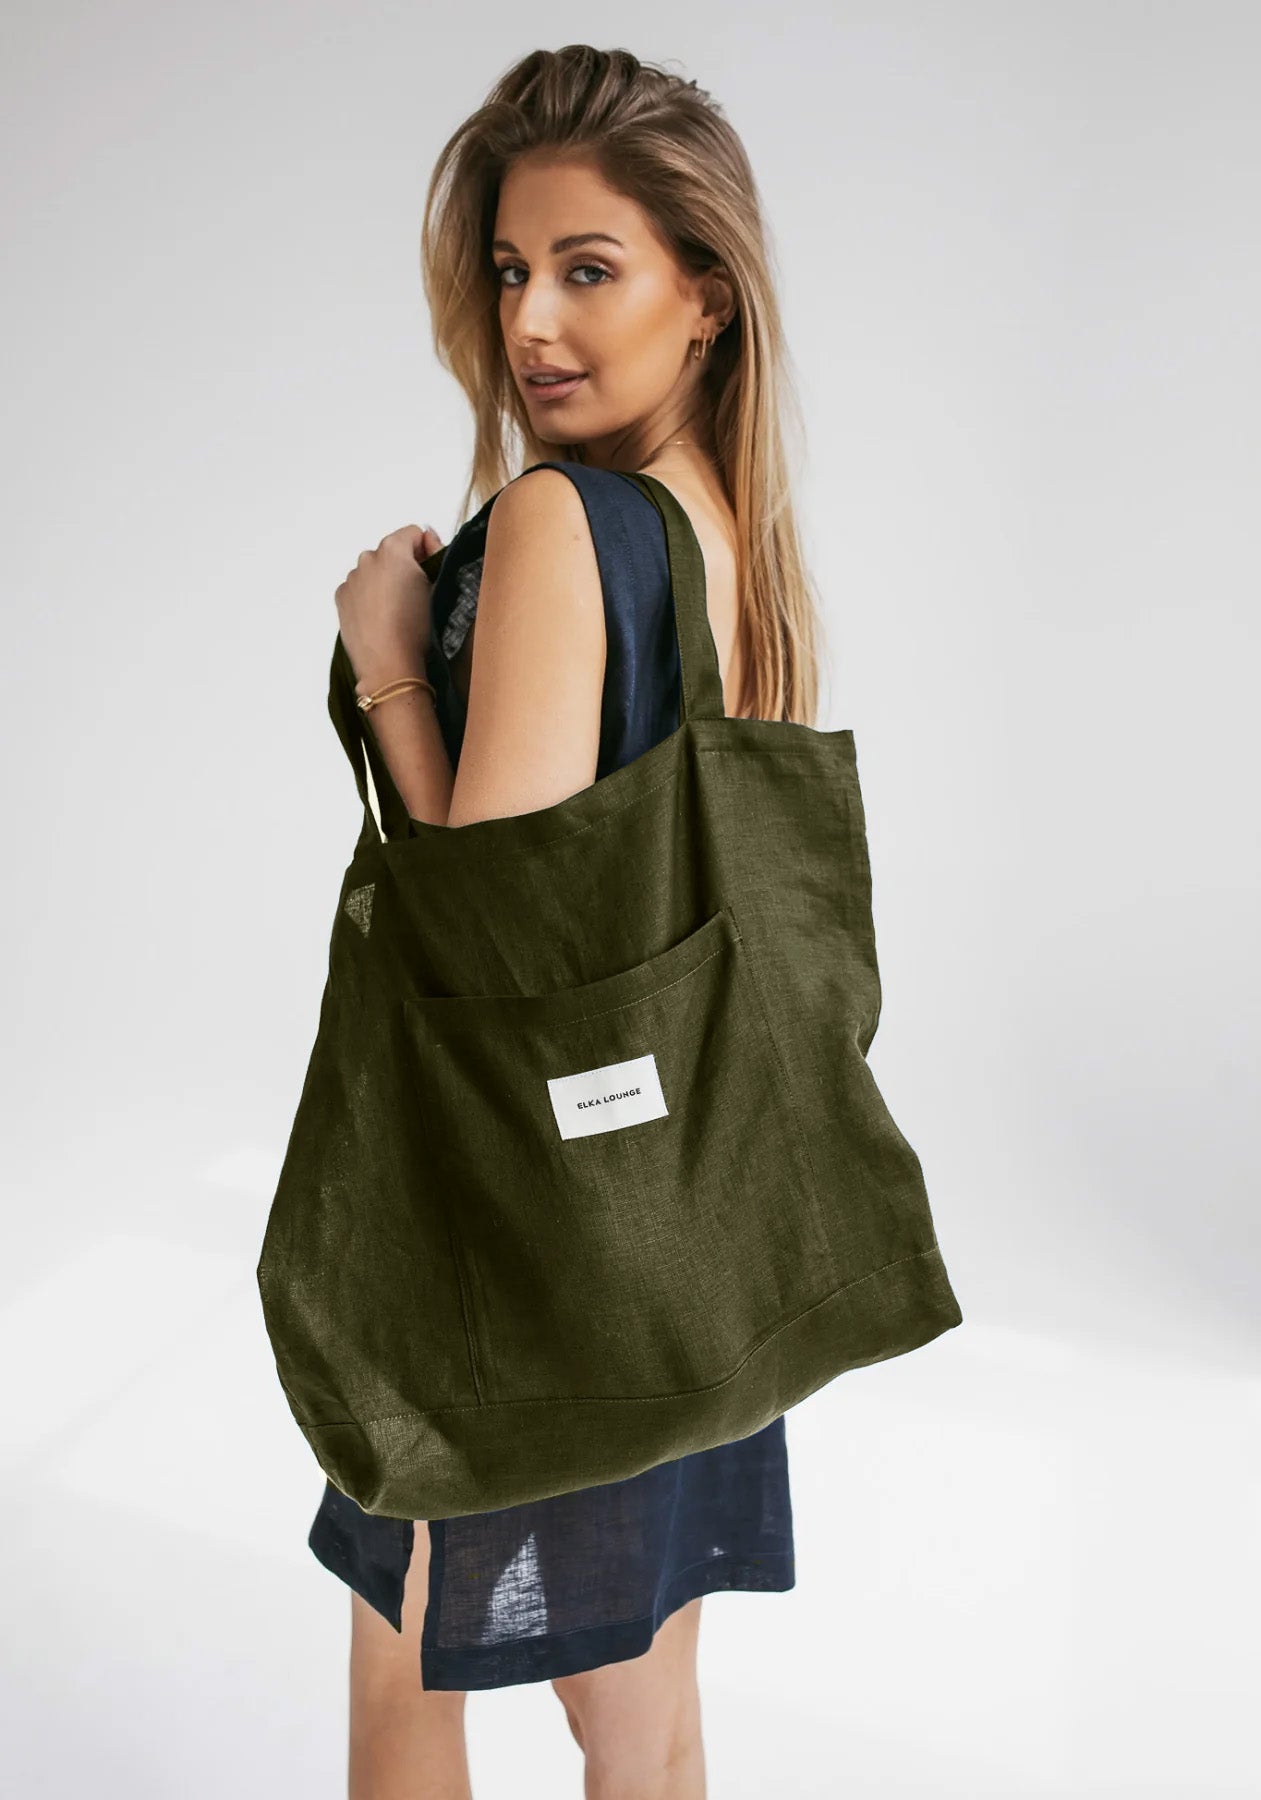 Linen bag Moss green